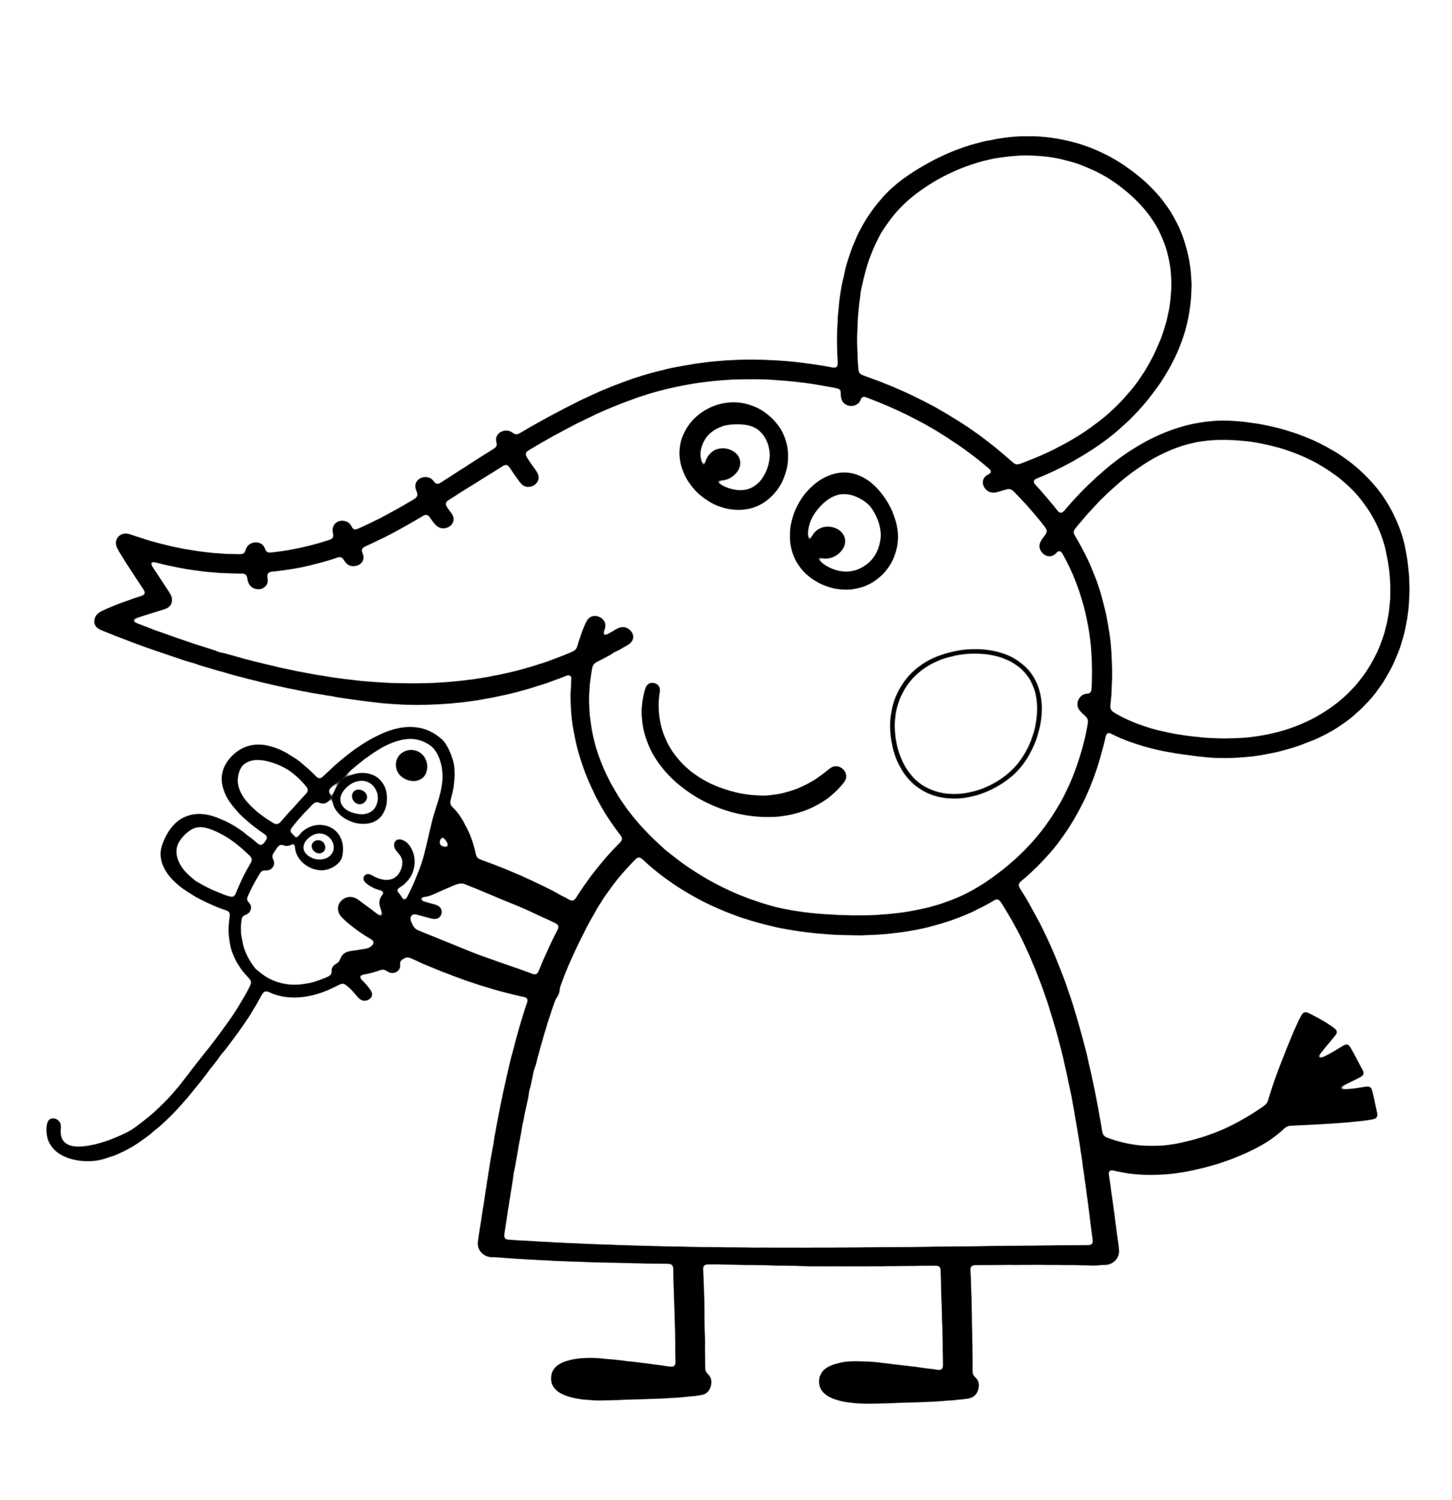 Emily elefante con topolino disegno da colorare gratis